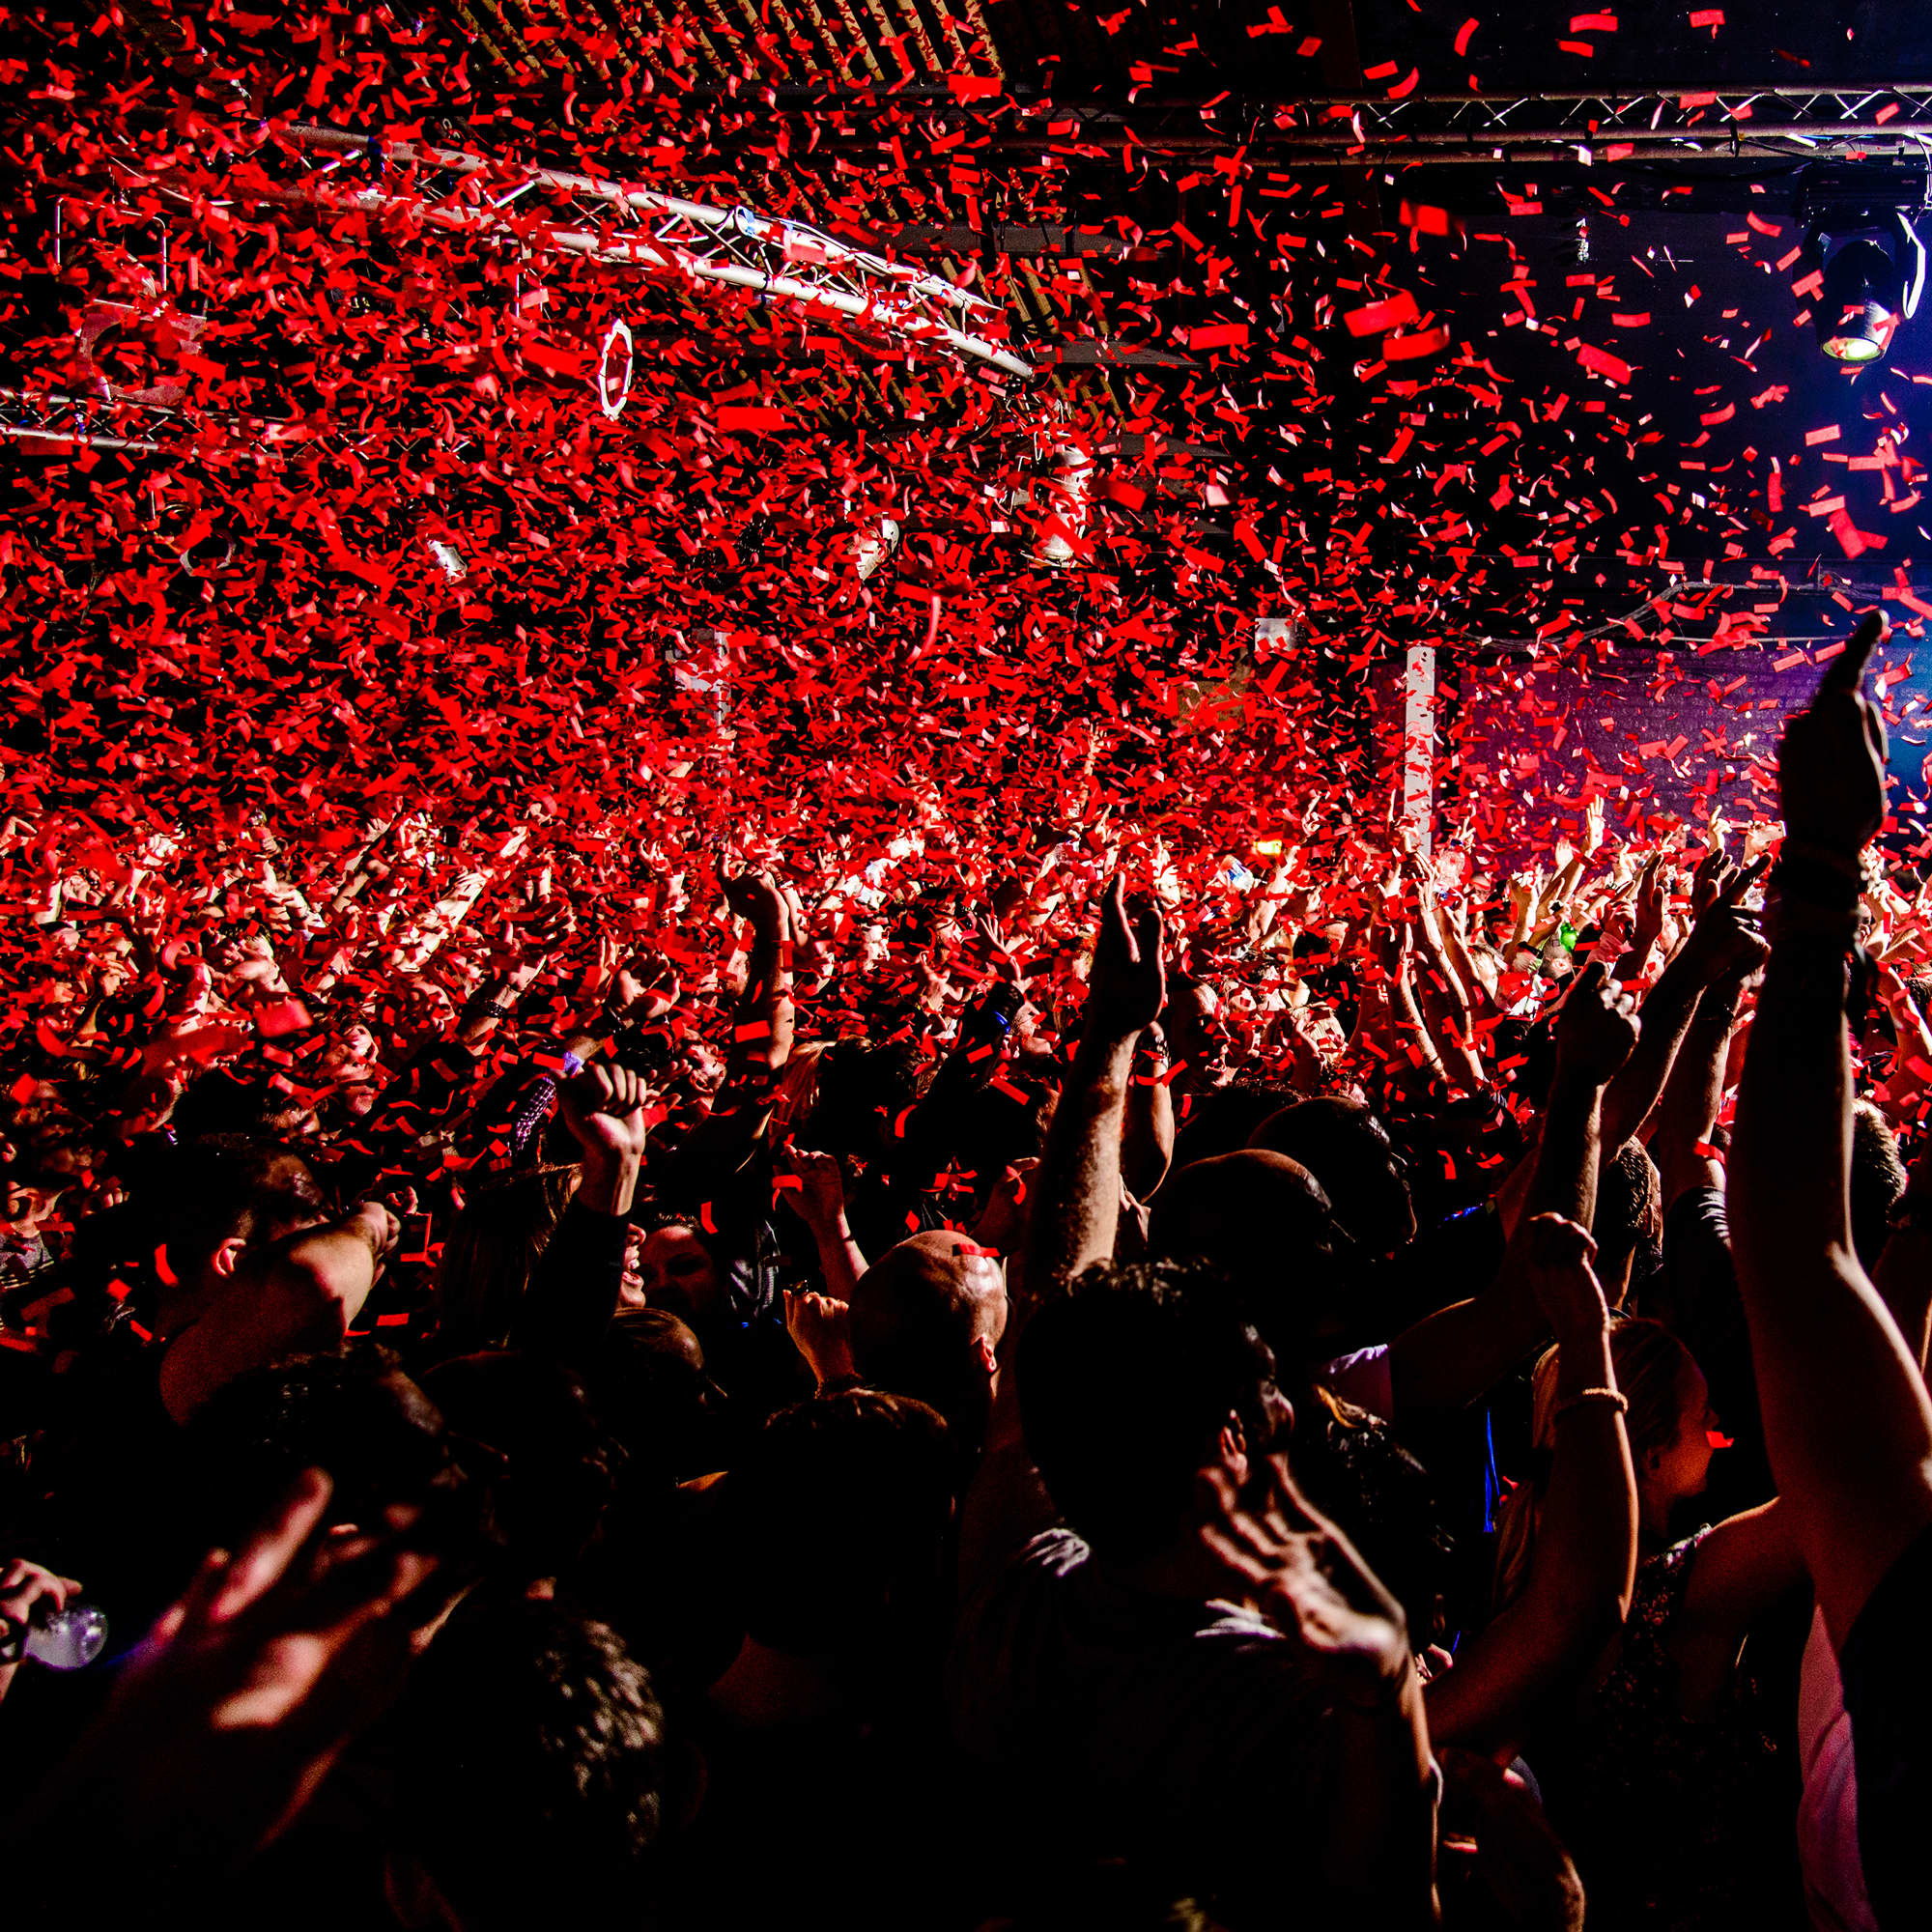 Disfruta de la noche madrileña en Fabrik, la discoteca más mítica de Madrid. Descubre los próximos eventos y fiestas con los mejores DJs. Venta exclusiva de entradas en Fever.